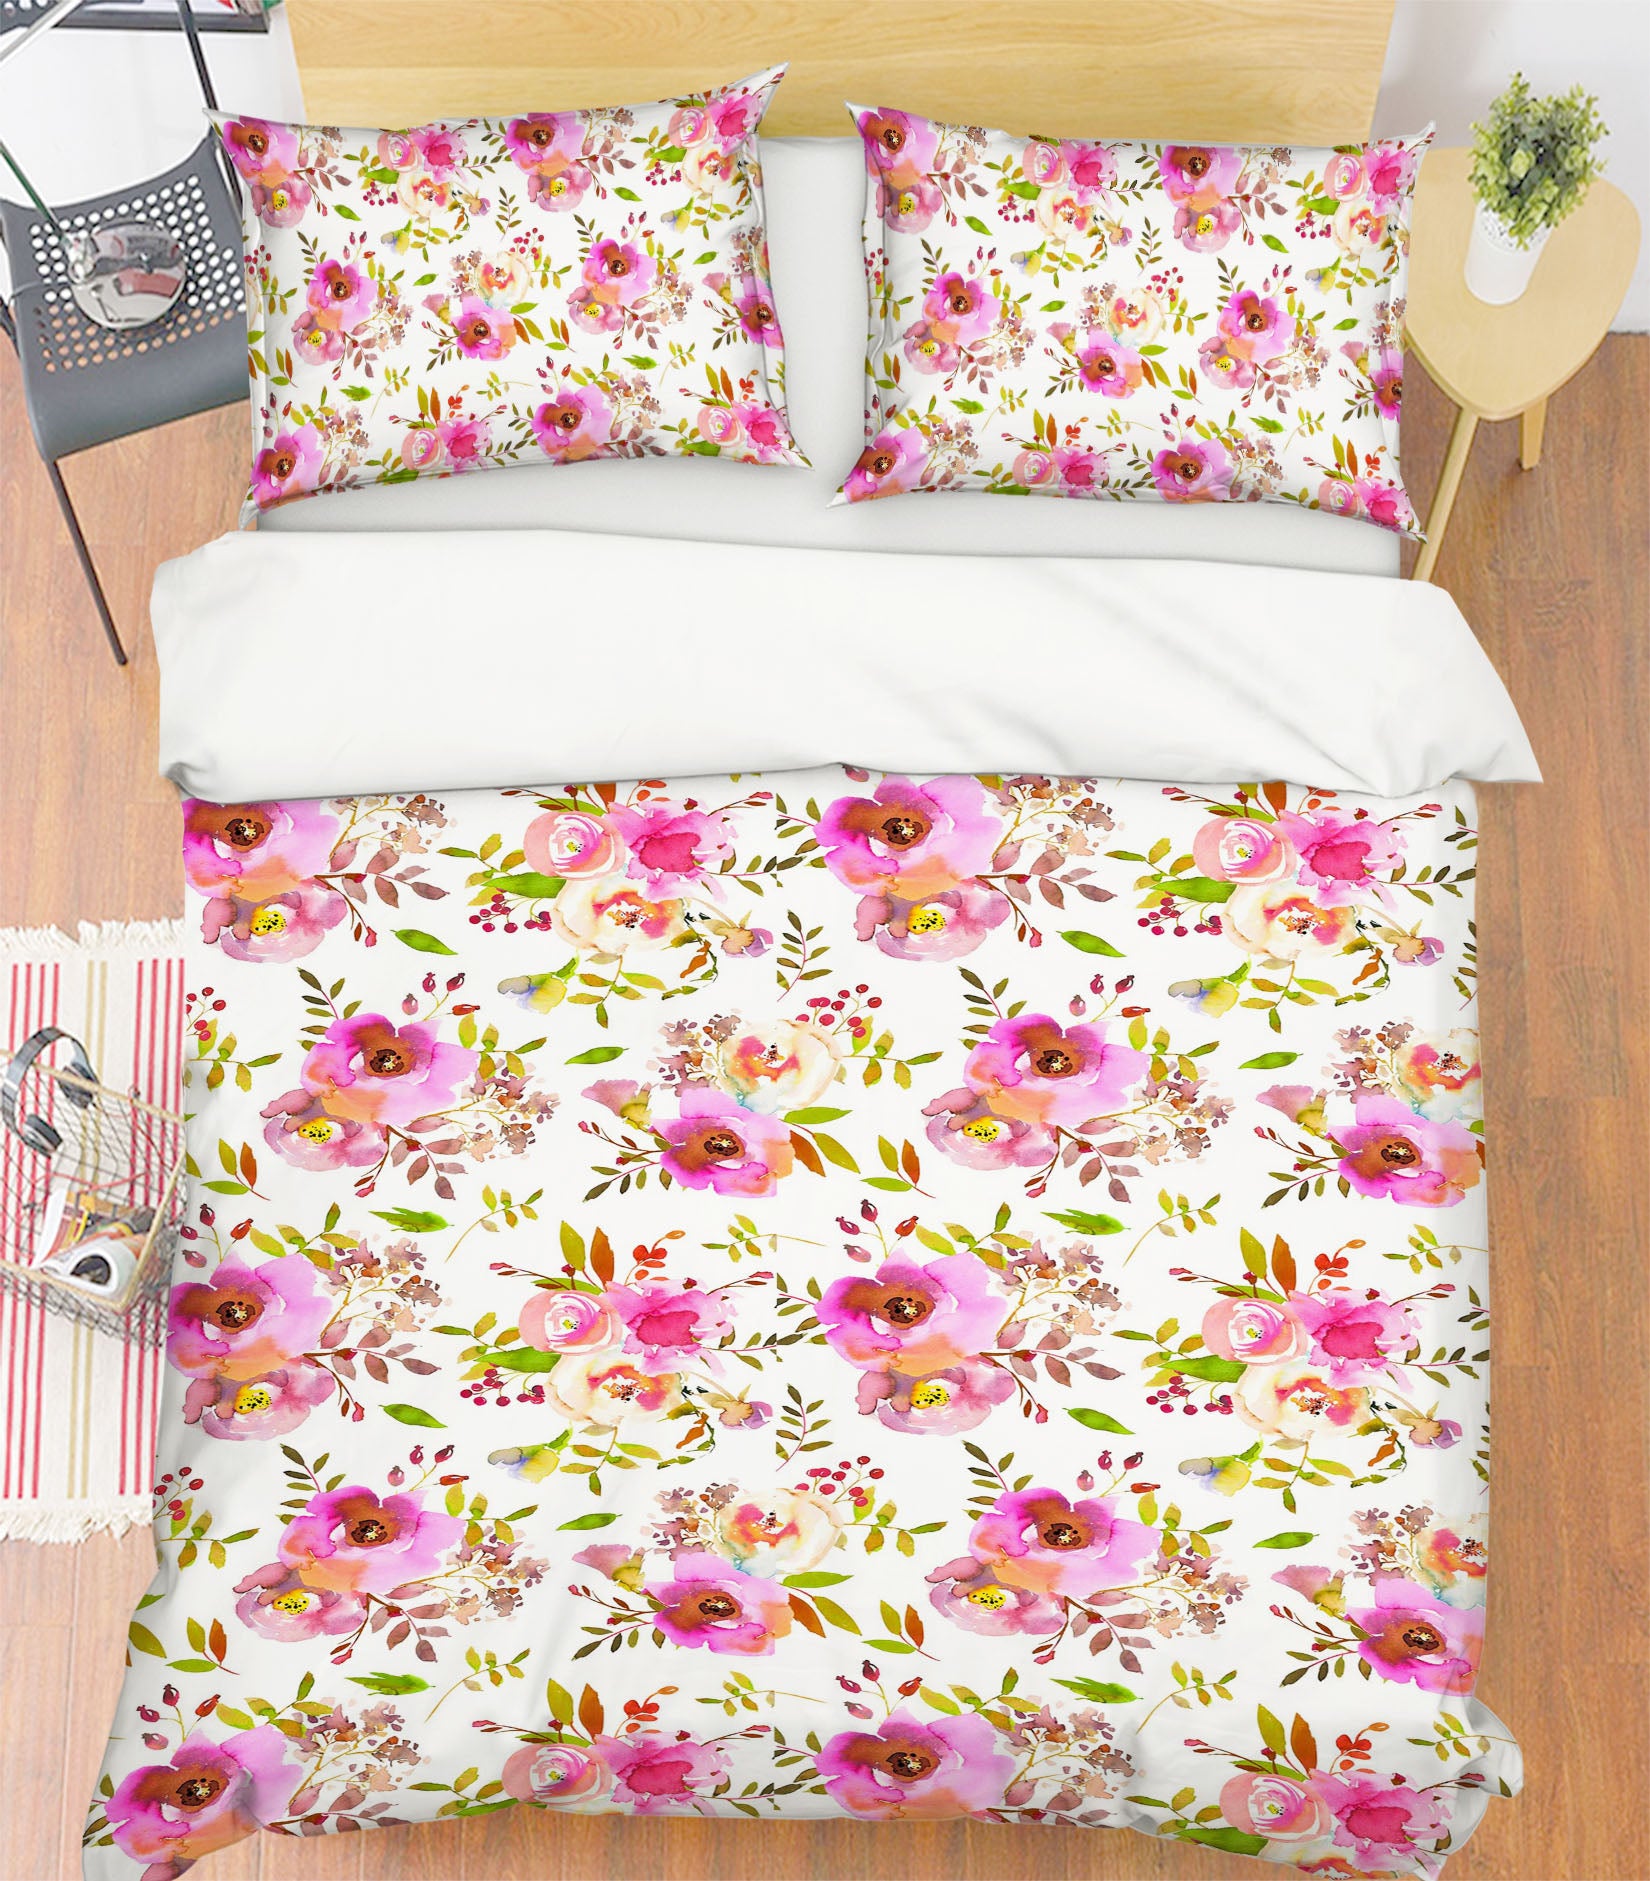 3D Floral Pattern 064 Uta Naumann Bedding Bed Pillowcases Quilt